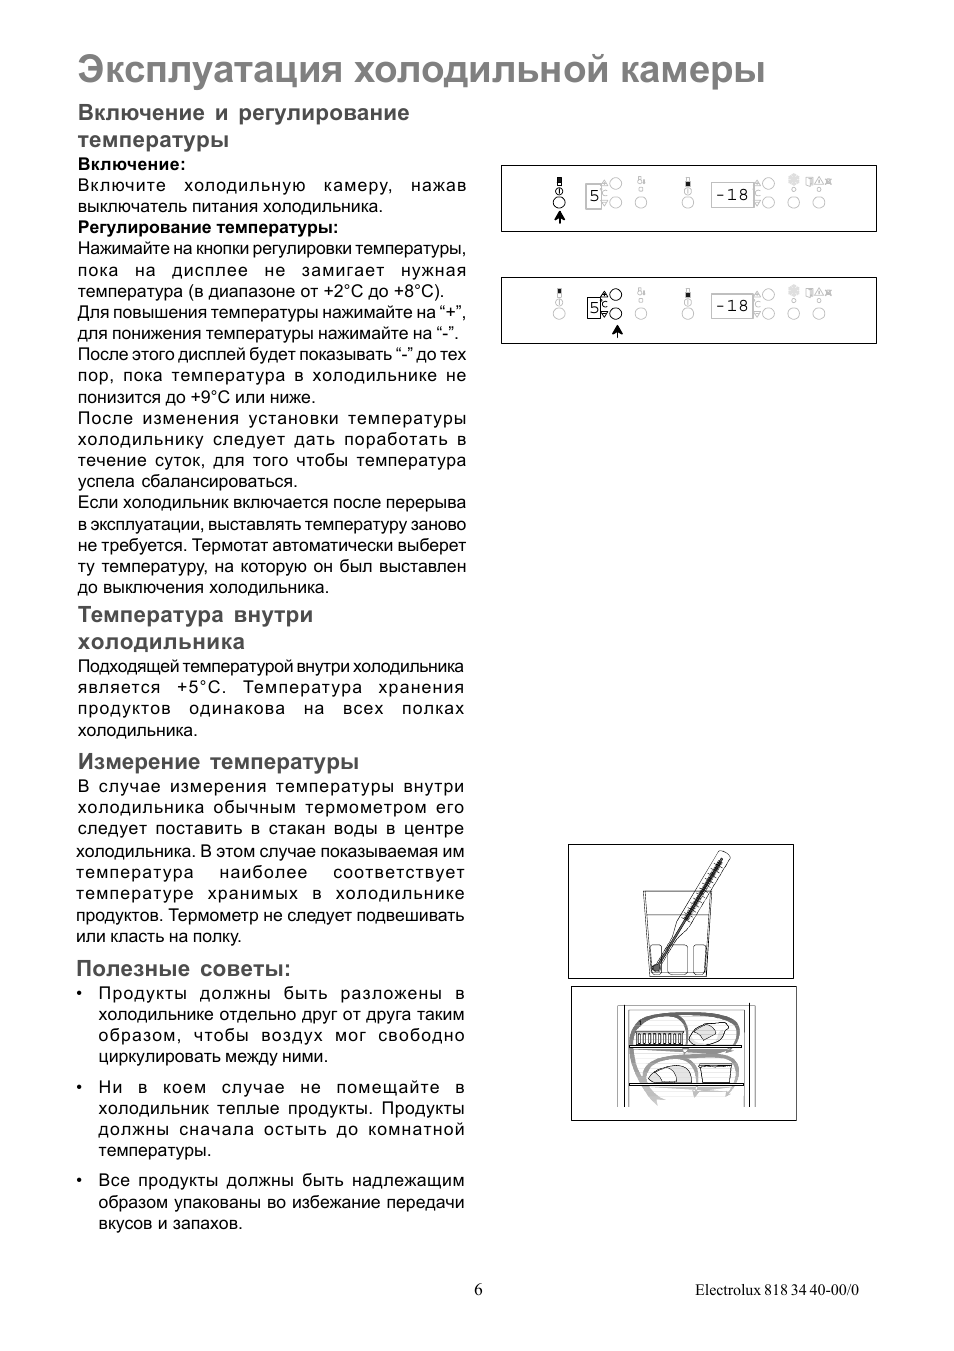 Инструкция по эксплуатации холодильных камер промышленных